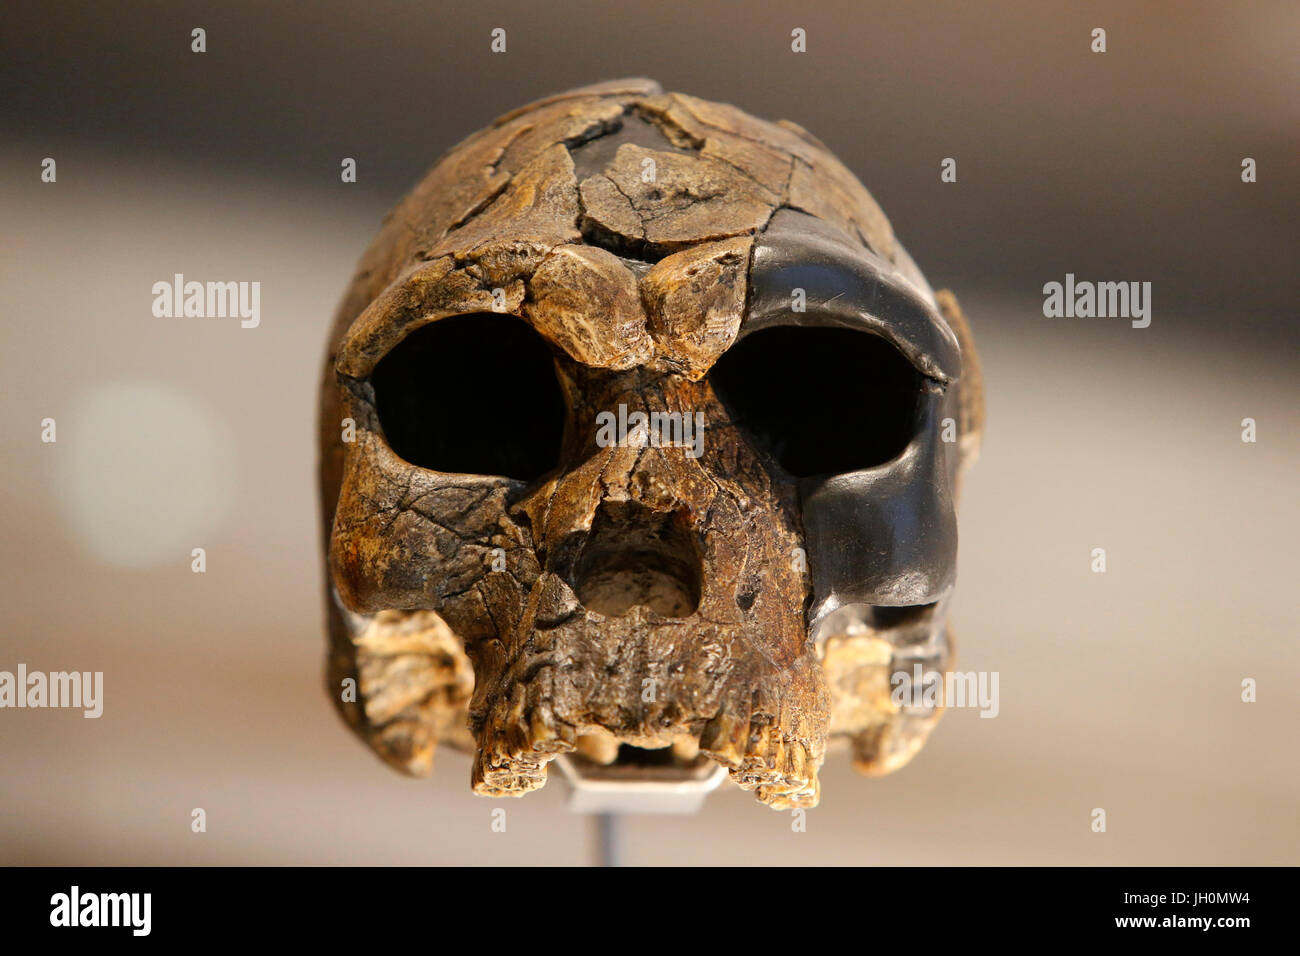 MusŽe de l'homme, Museum of Mankind, Paris. Homo sapiens skull. France. Stock Photo